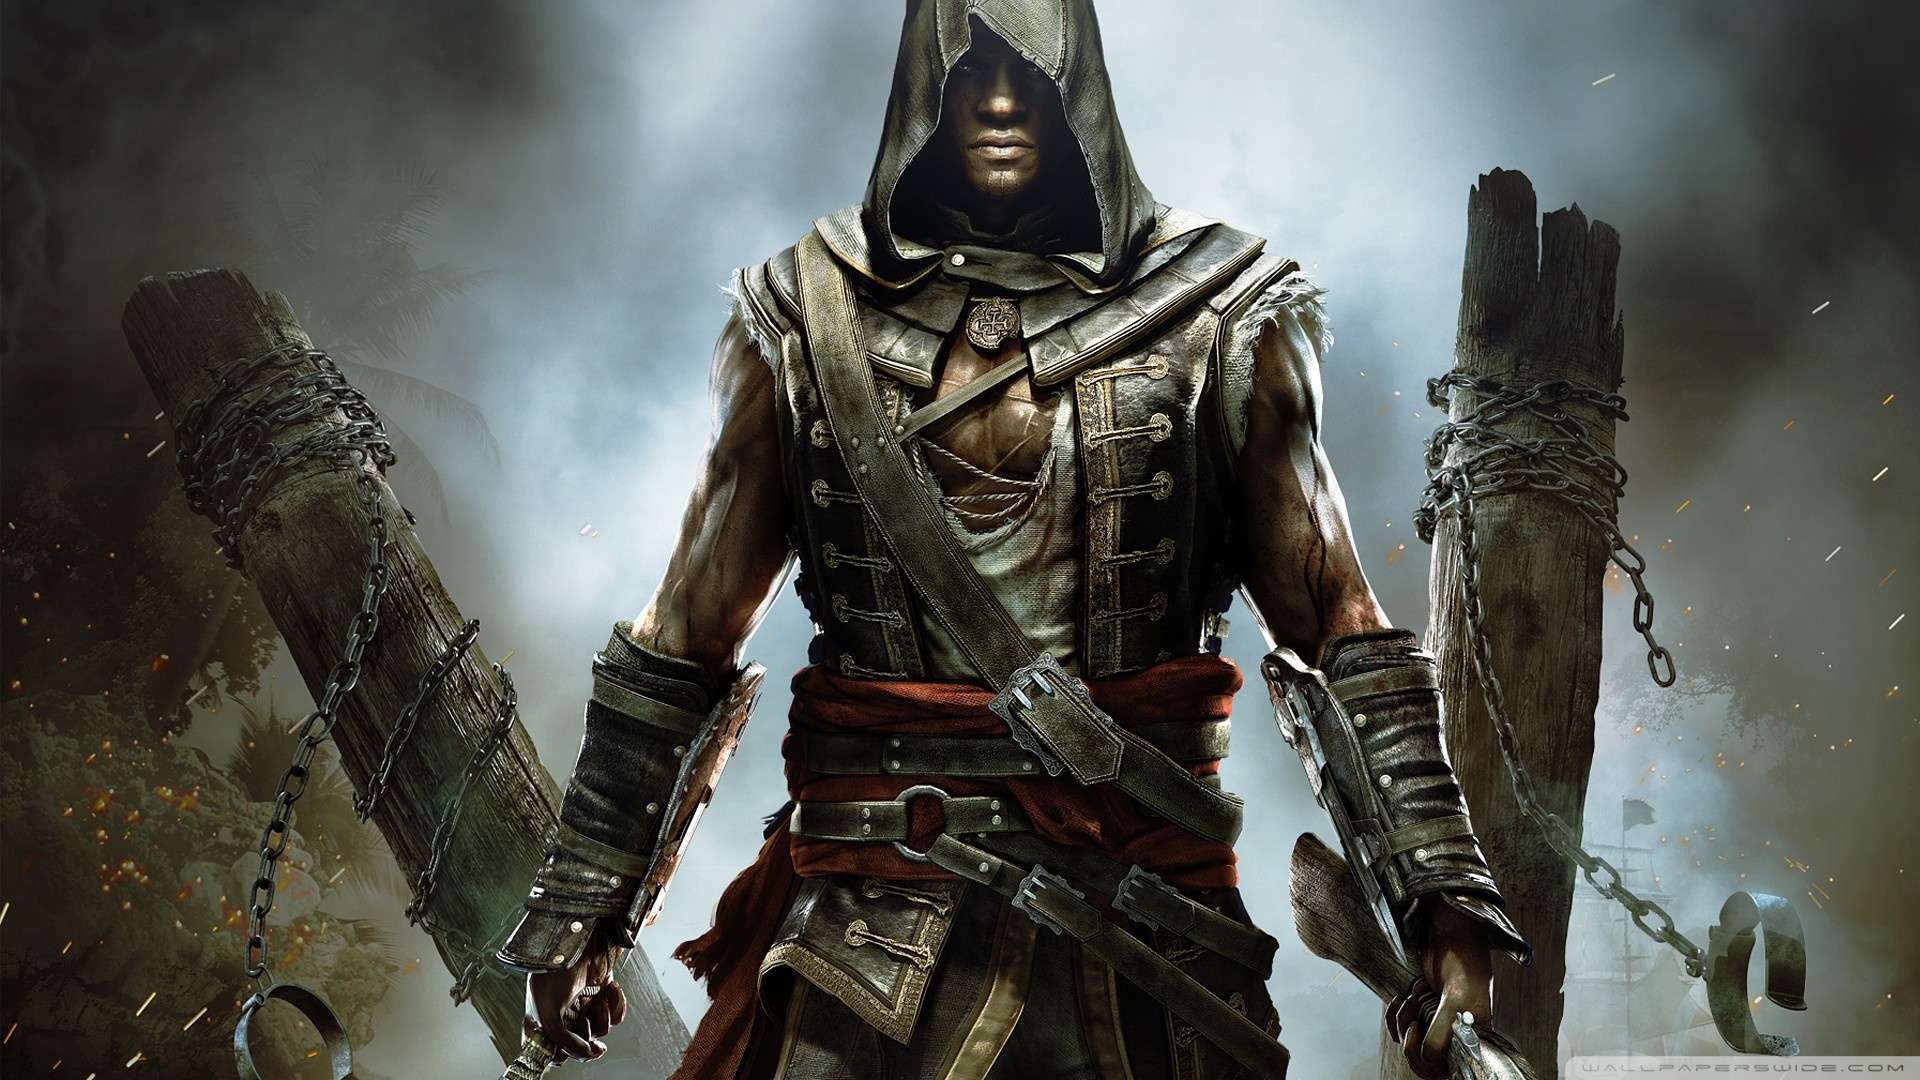 Now Assassins Creed Iv Black Flag Grito De Libertad Wallpaper 1080p